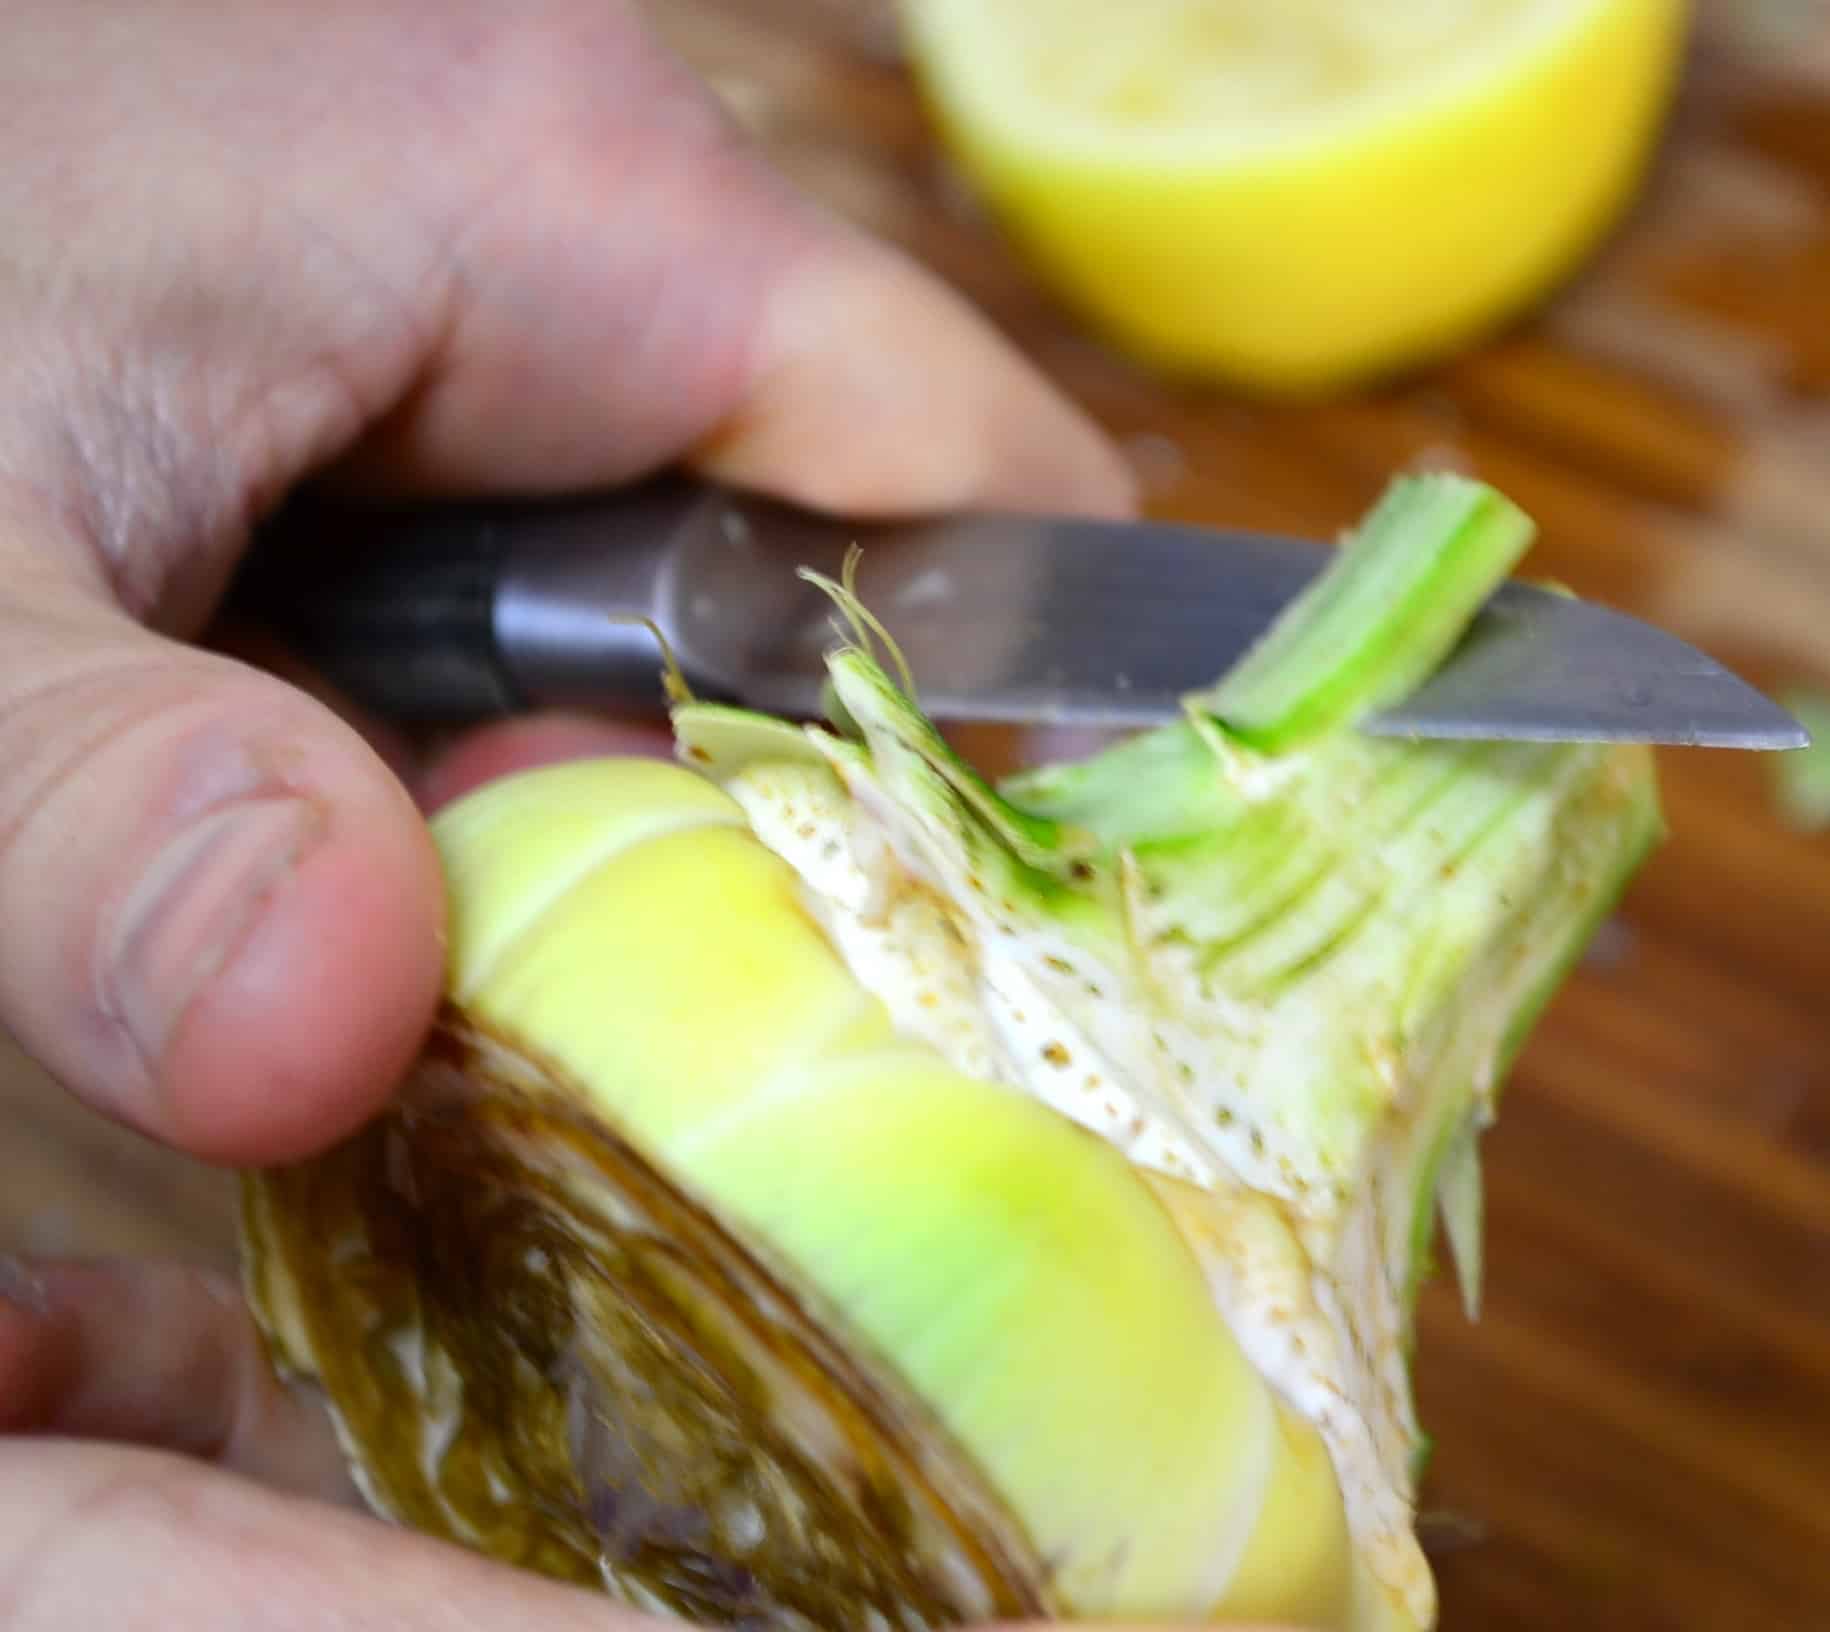 peeling a fresh artichoke